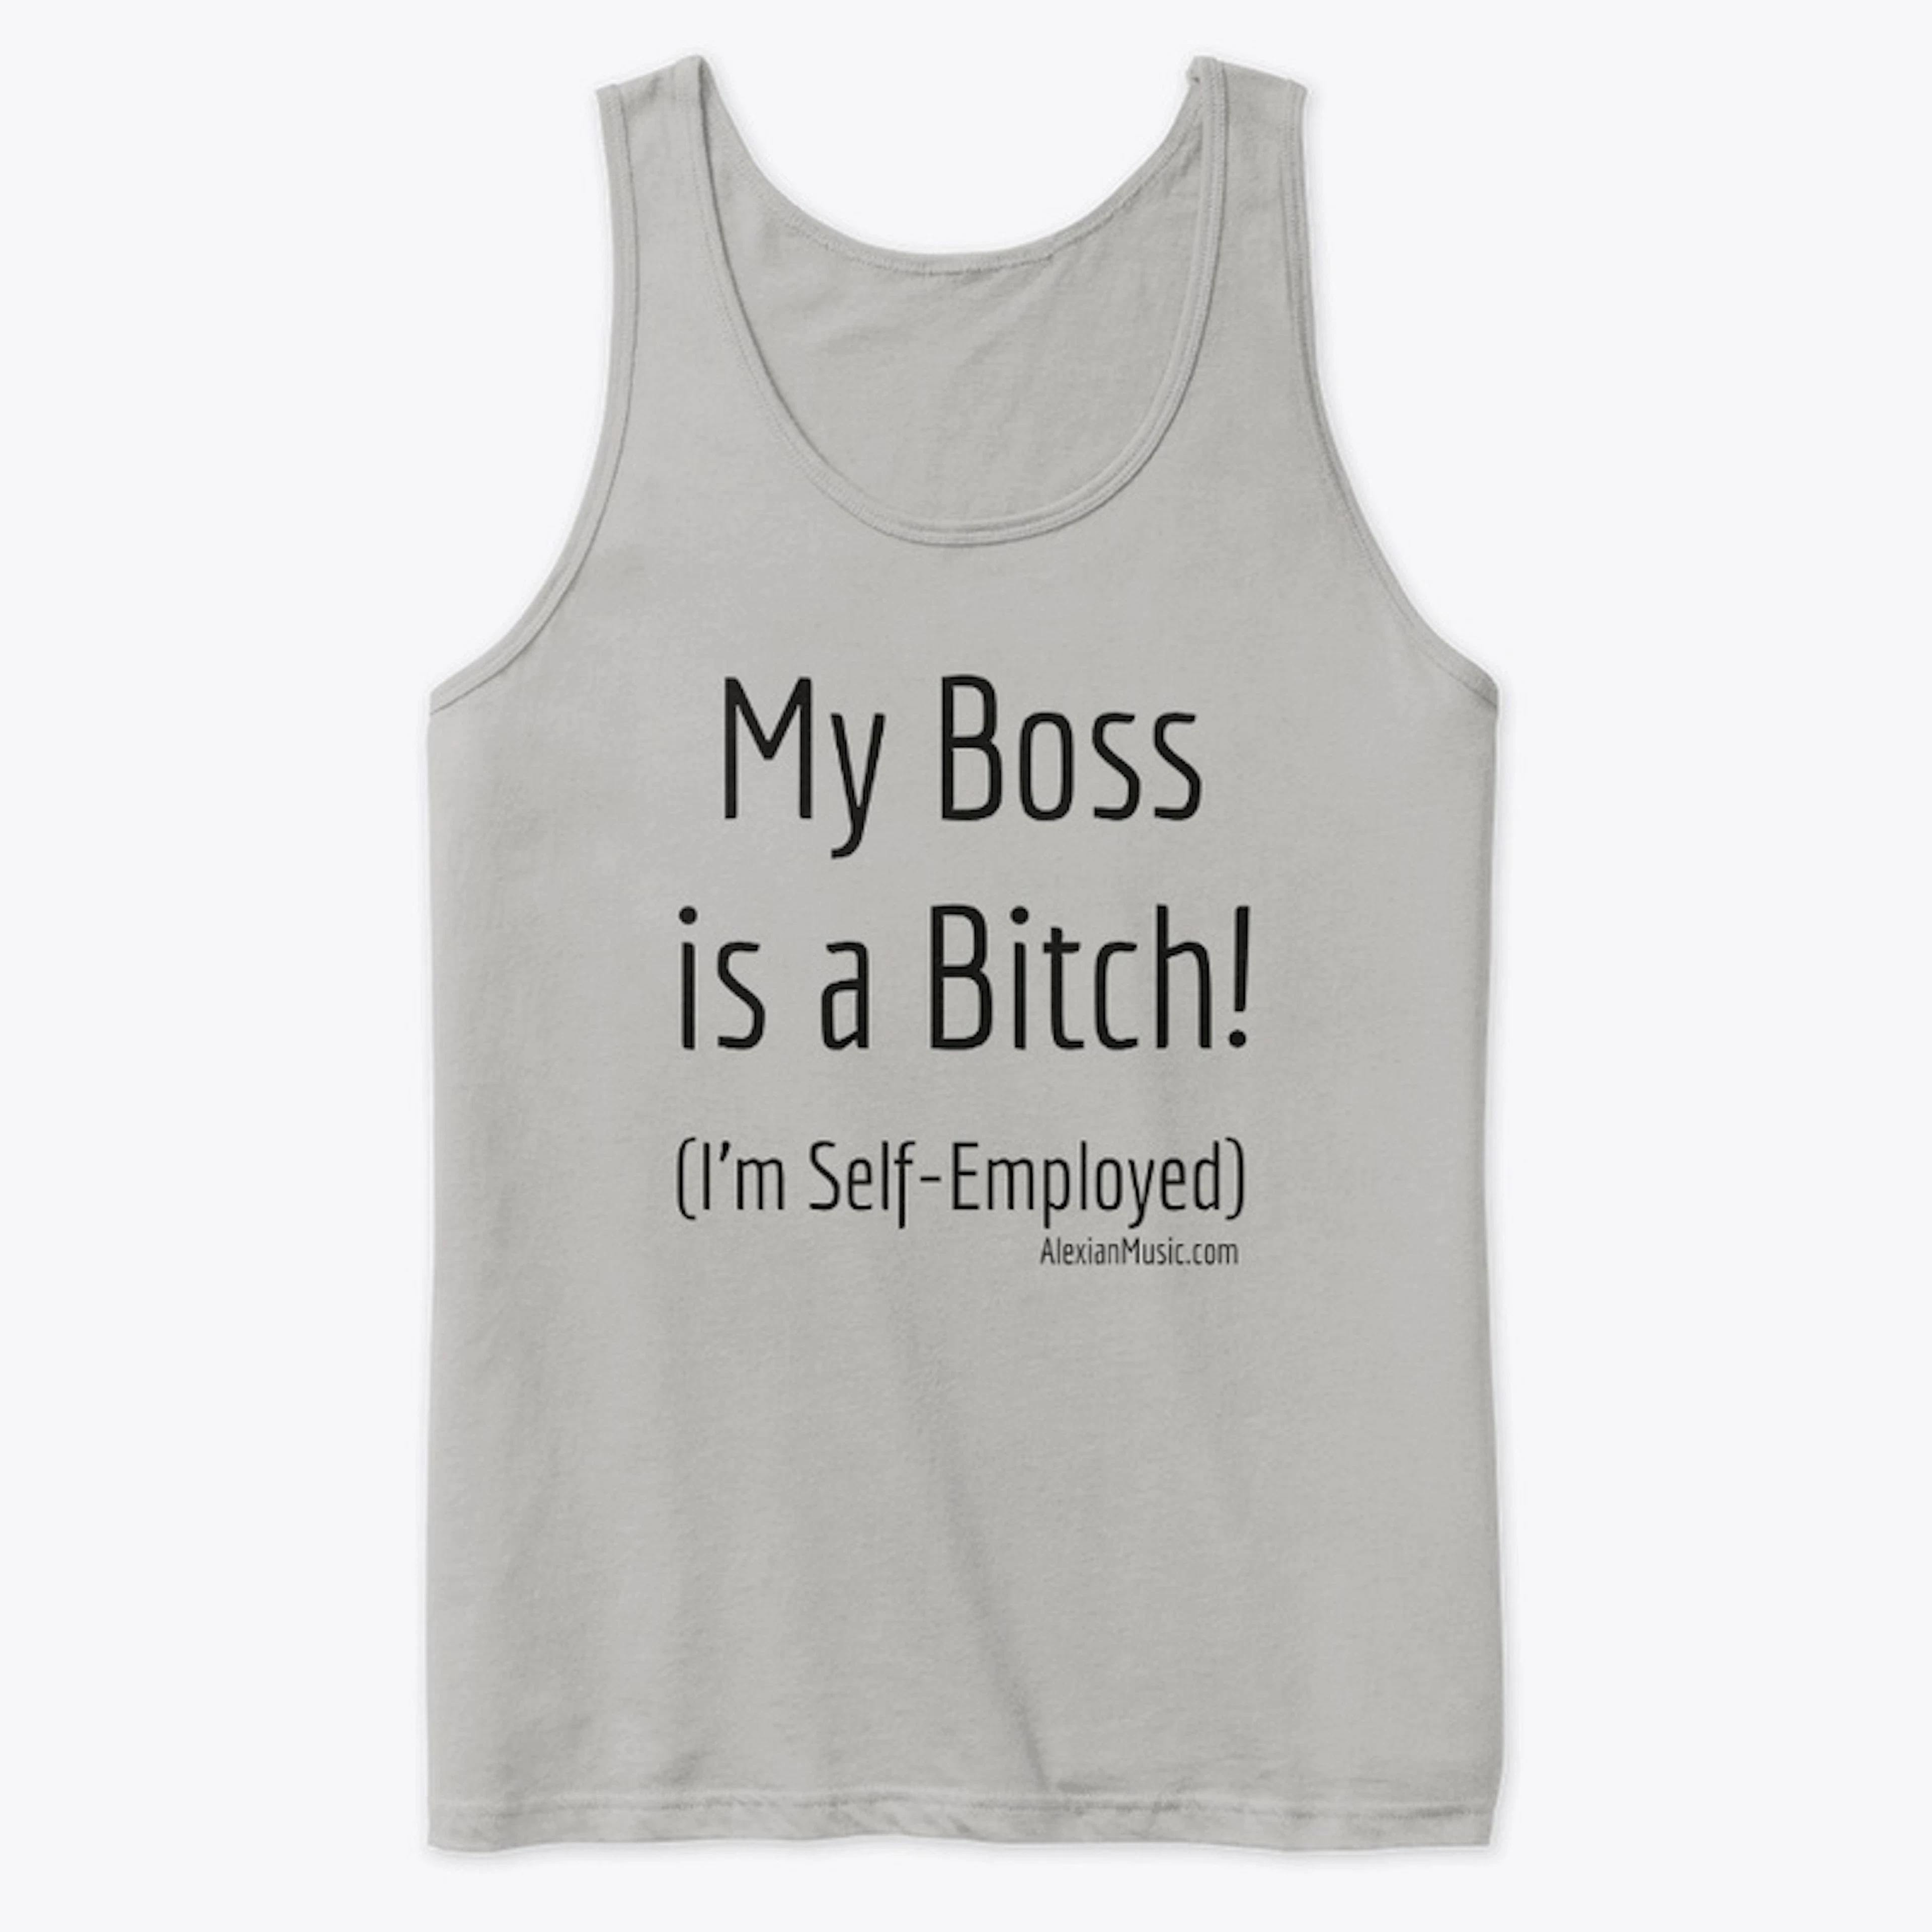 My Boss is a Bitch!